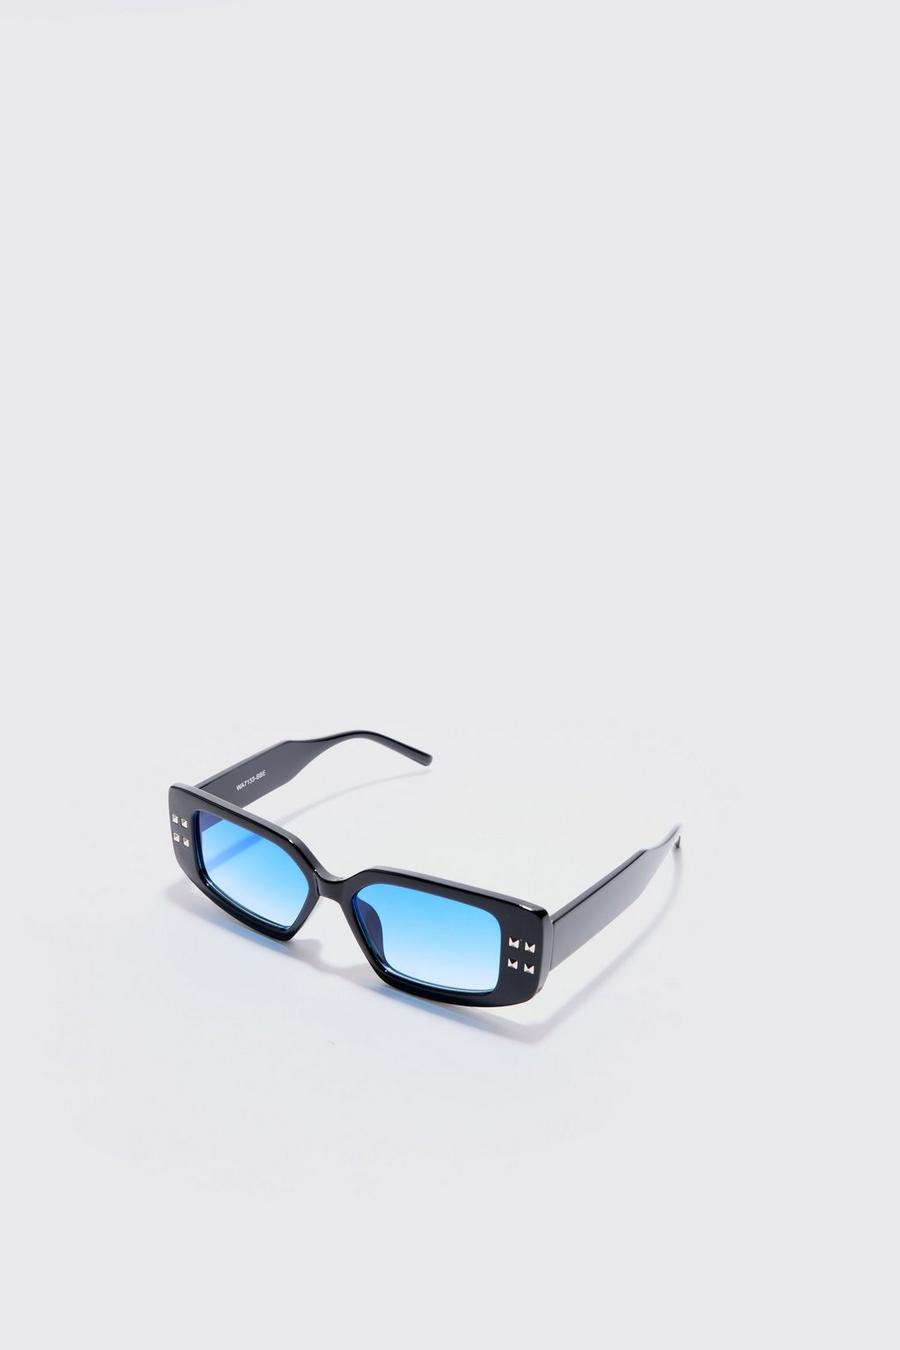 Klobige eckige Sonnenbrille in schwarz mit blauen Gläsern, Black